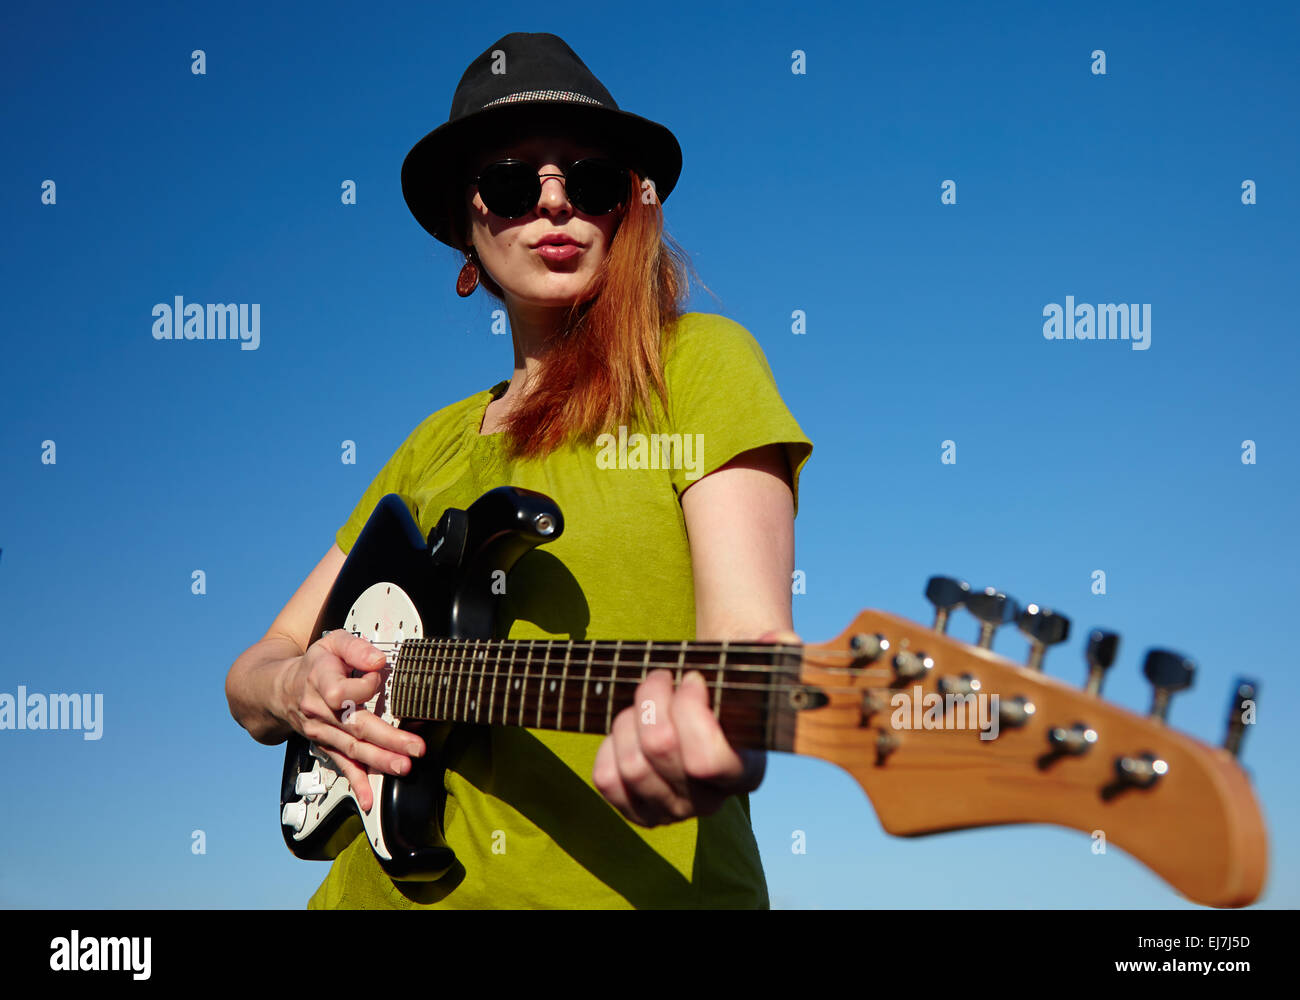 Suonatore ambulante femmina con la chitarra elegante musicista femmina con i capelli rossi indossatore in black hat e camicia verde gioca sulla chitarra. Foto Stock